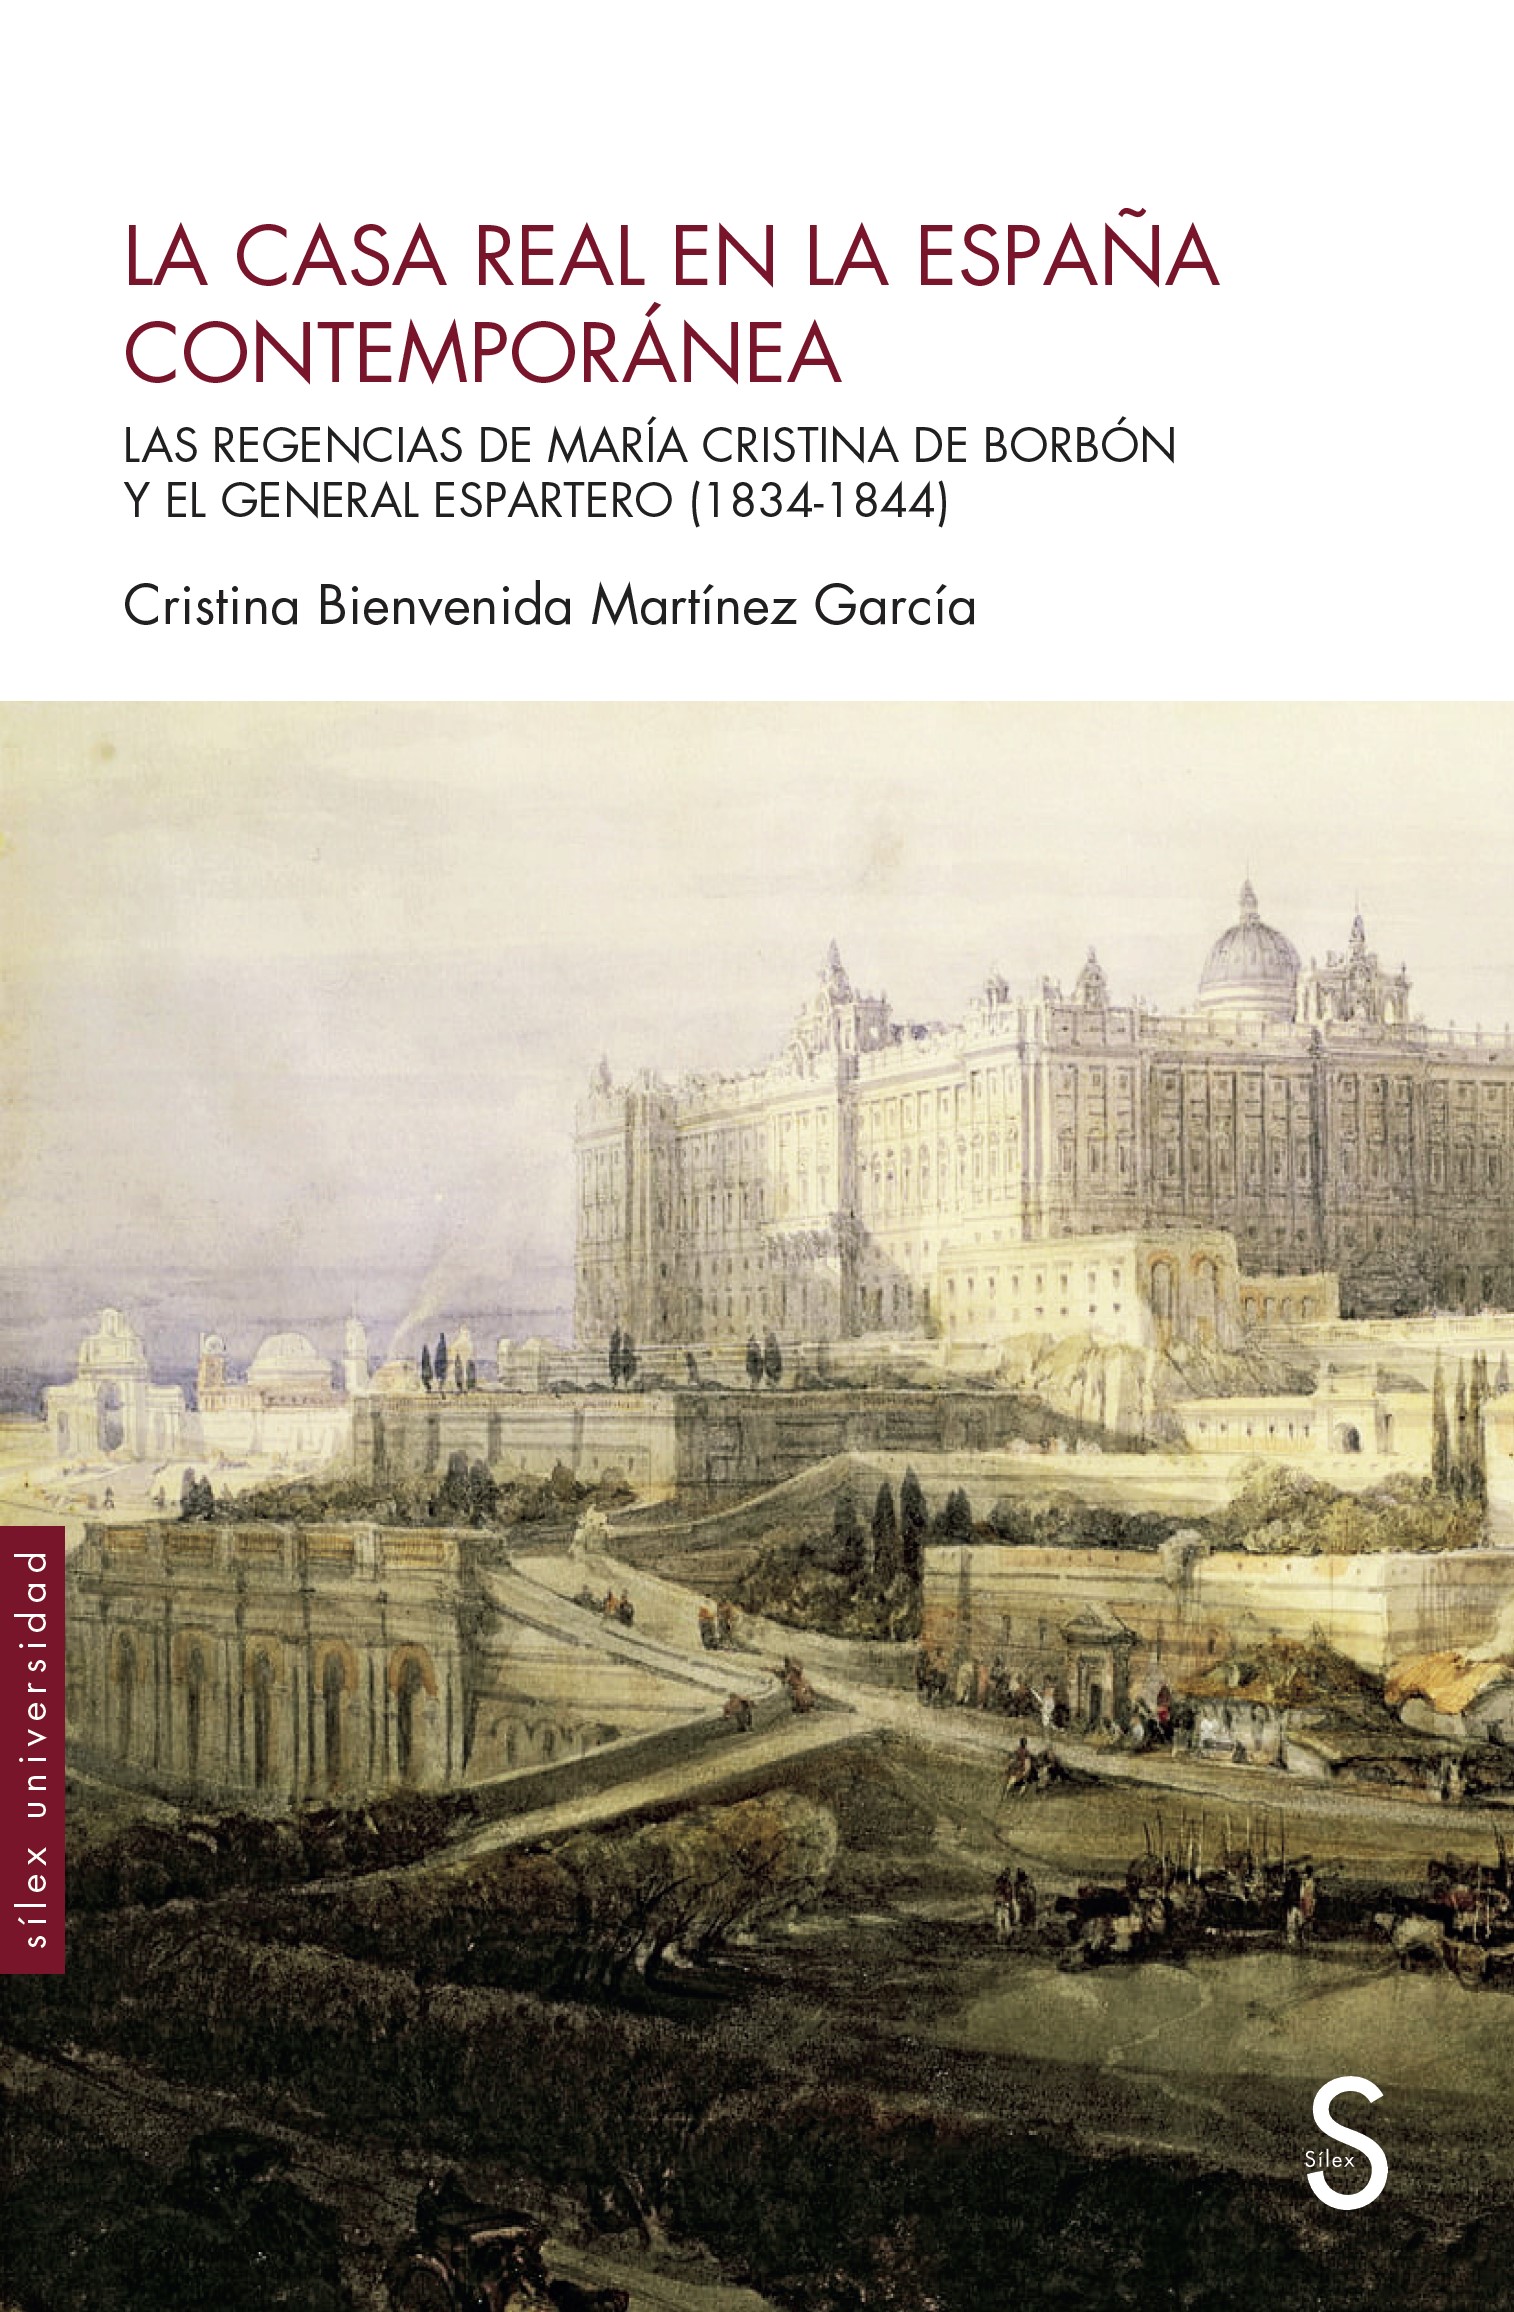 La Casa Real en la España contemporánea   «Las regencias de María Cristina de Borbón y el general Espartero (1834-1844)»